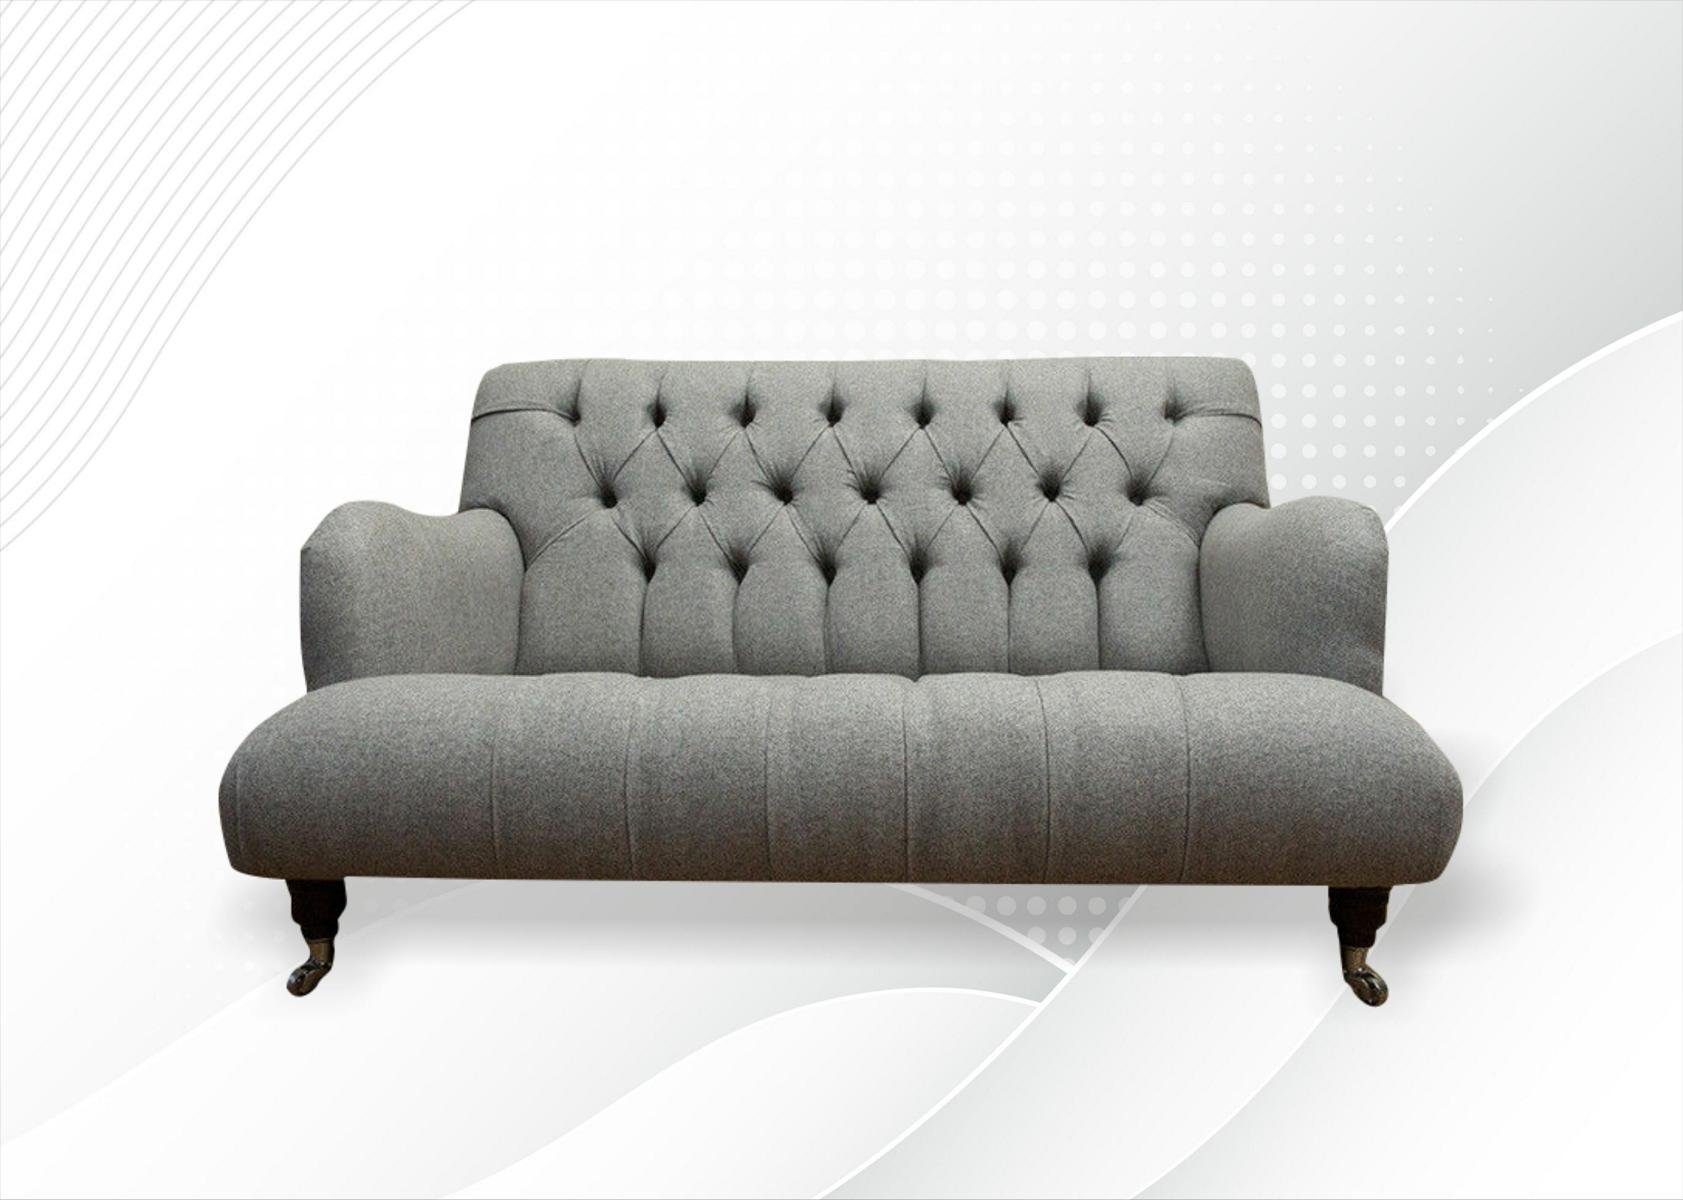 Das Produkt erfreut sich großer Beliebtheit JVmoebel Chesterfield-Sofa, Moderner Chesterfield Zweisitzer Textil